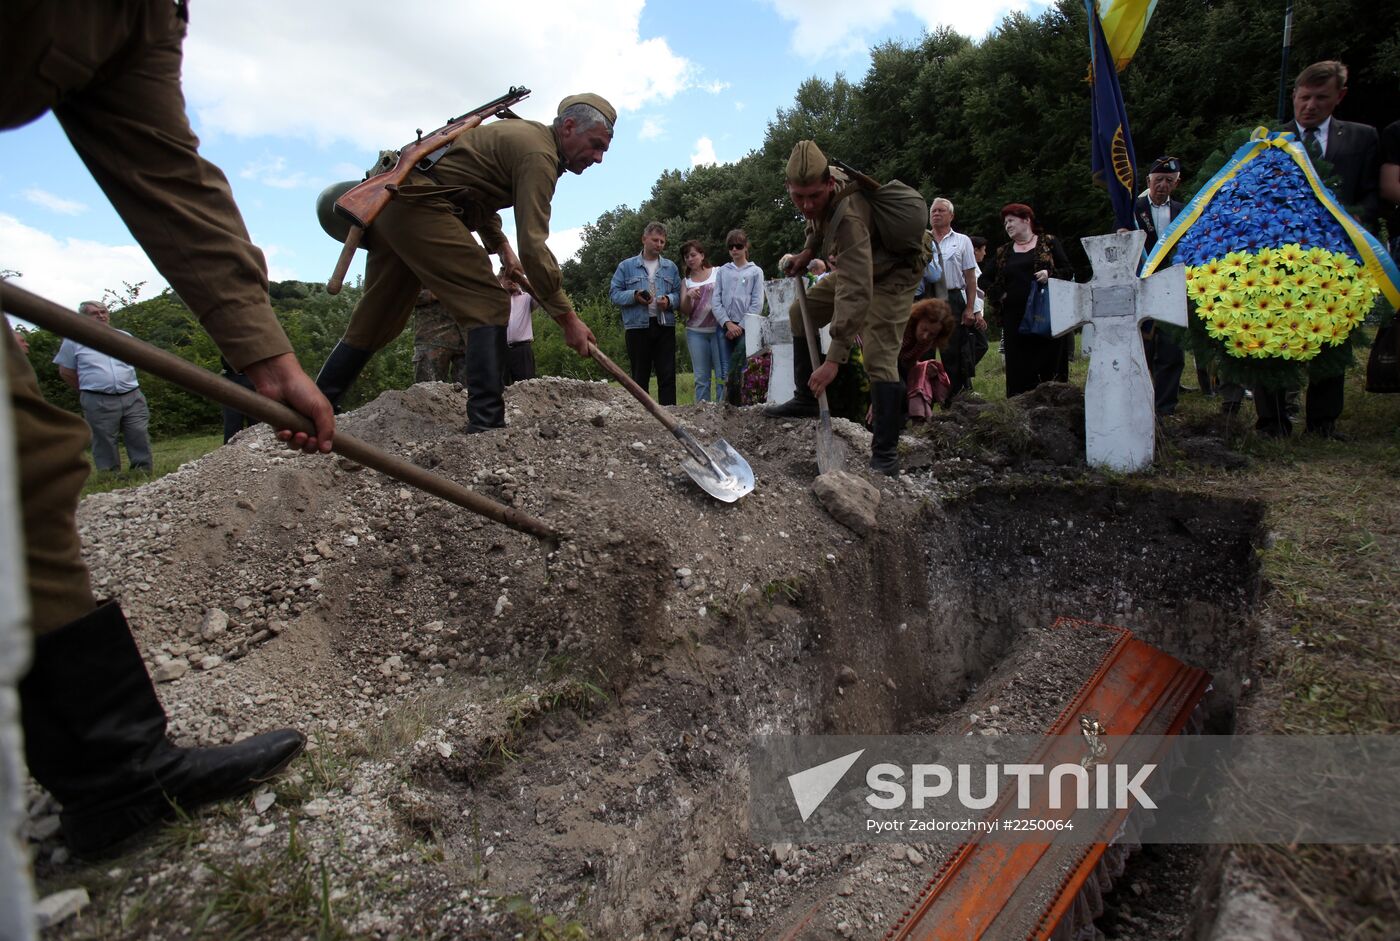 Honoring veterans of Waffen-SS Division Galichina in Ukraine